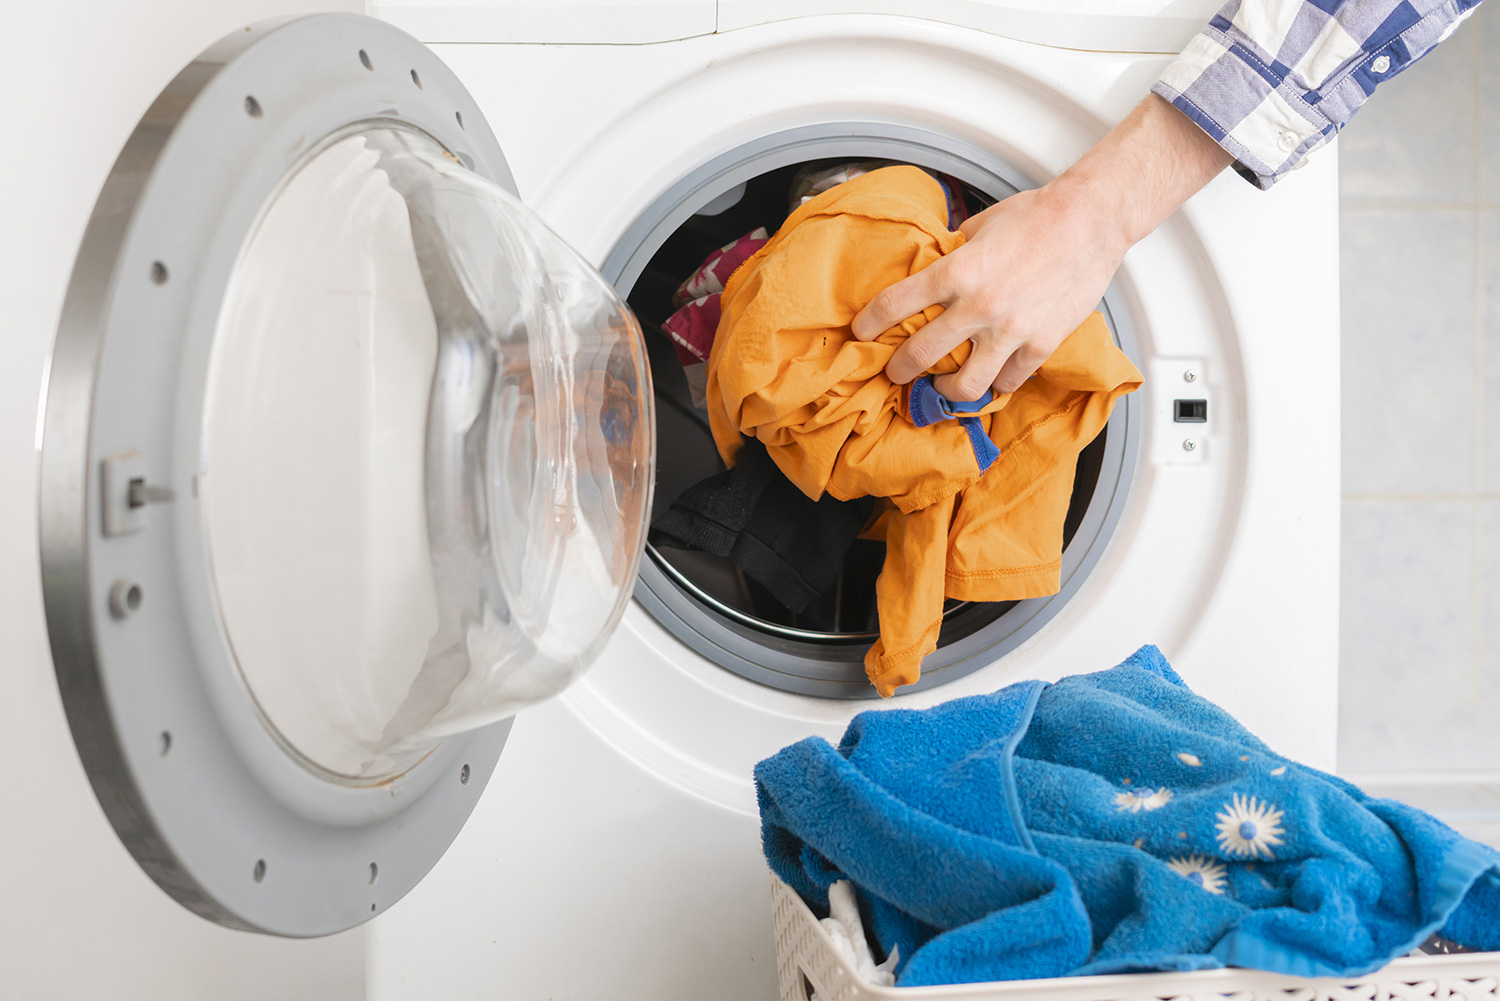 Guía de capacidad y tamaño de carga de lavadoras